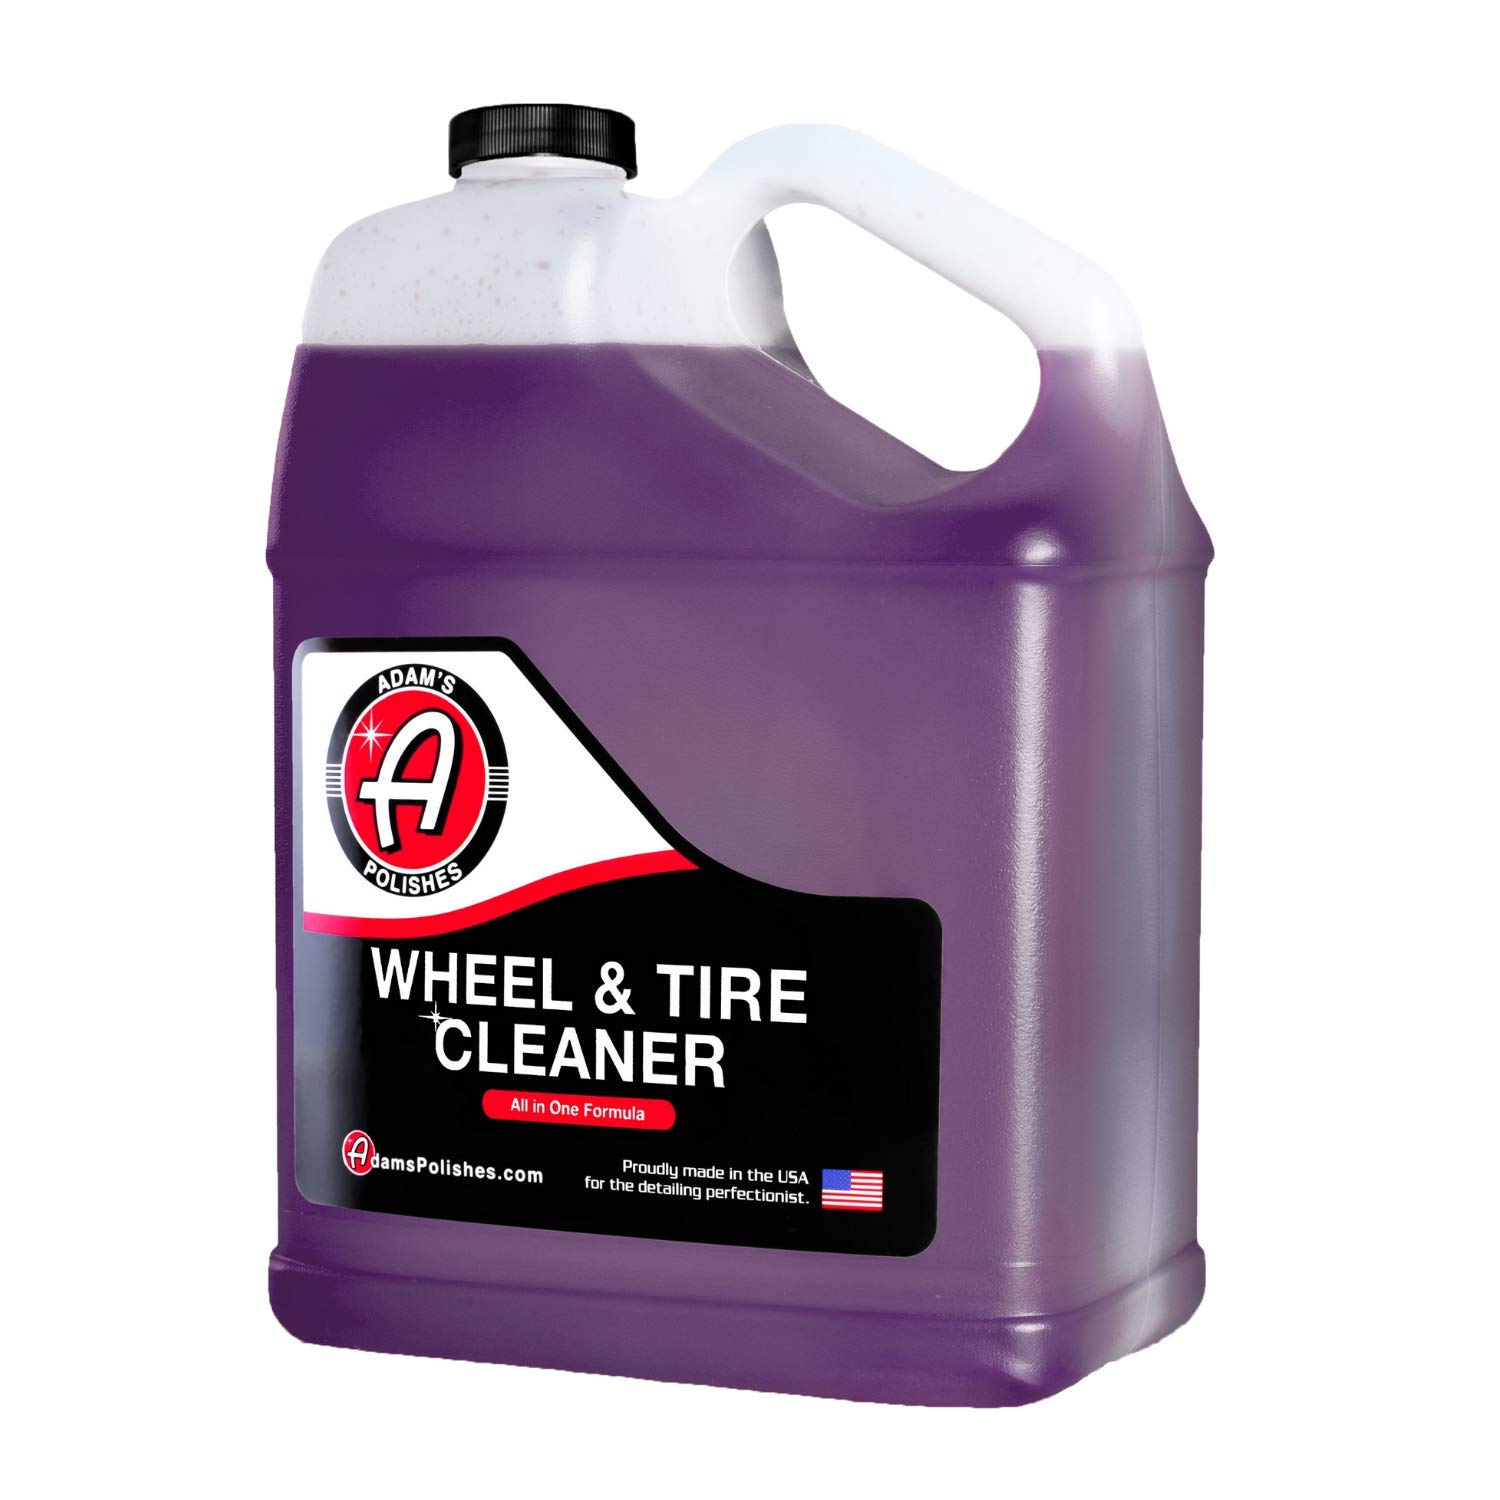 128oz (1 gallon) Adam's Polishes Wheel & Tire Cleaner, $26.99 w/ S&S, Amazon